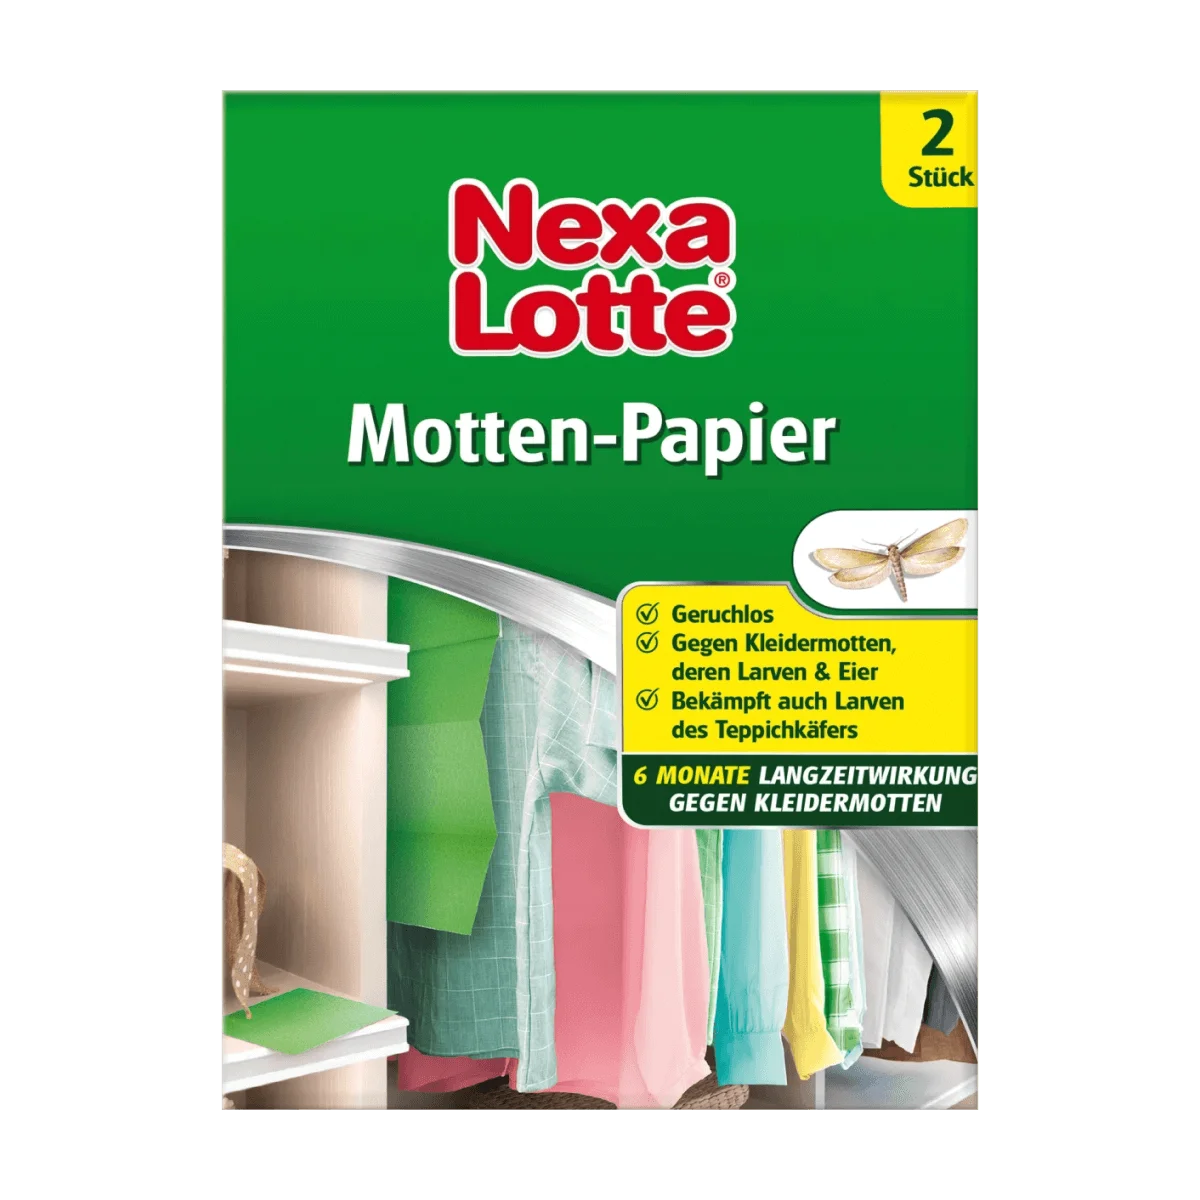 Nexa-Lotte Ultra Insektenspray